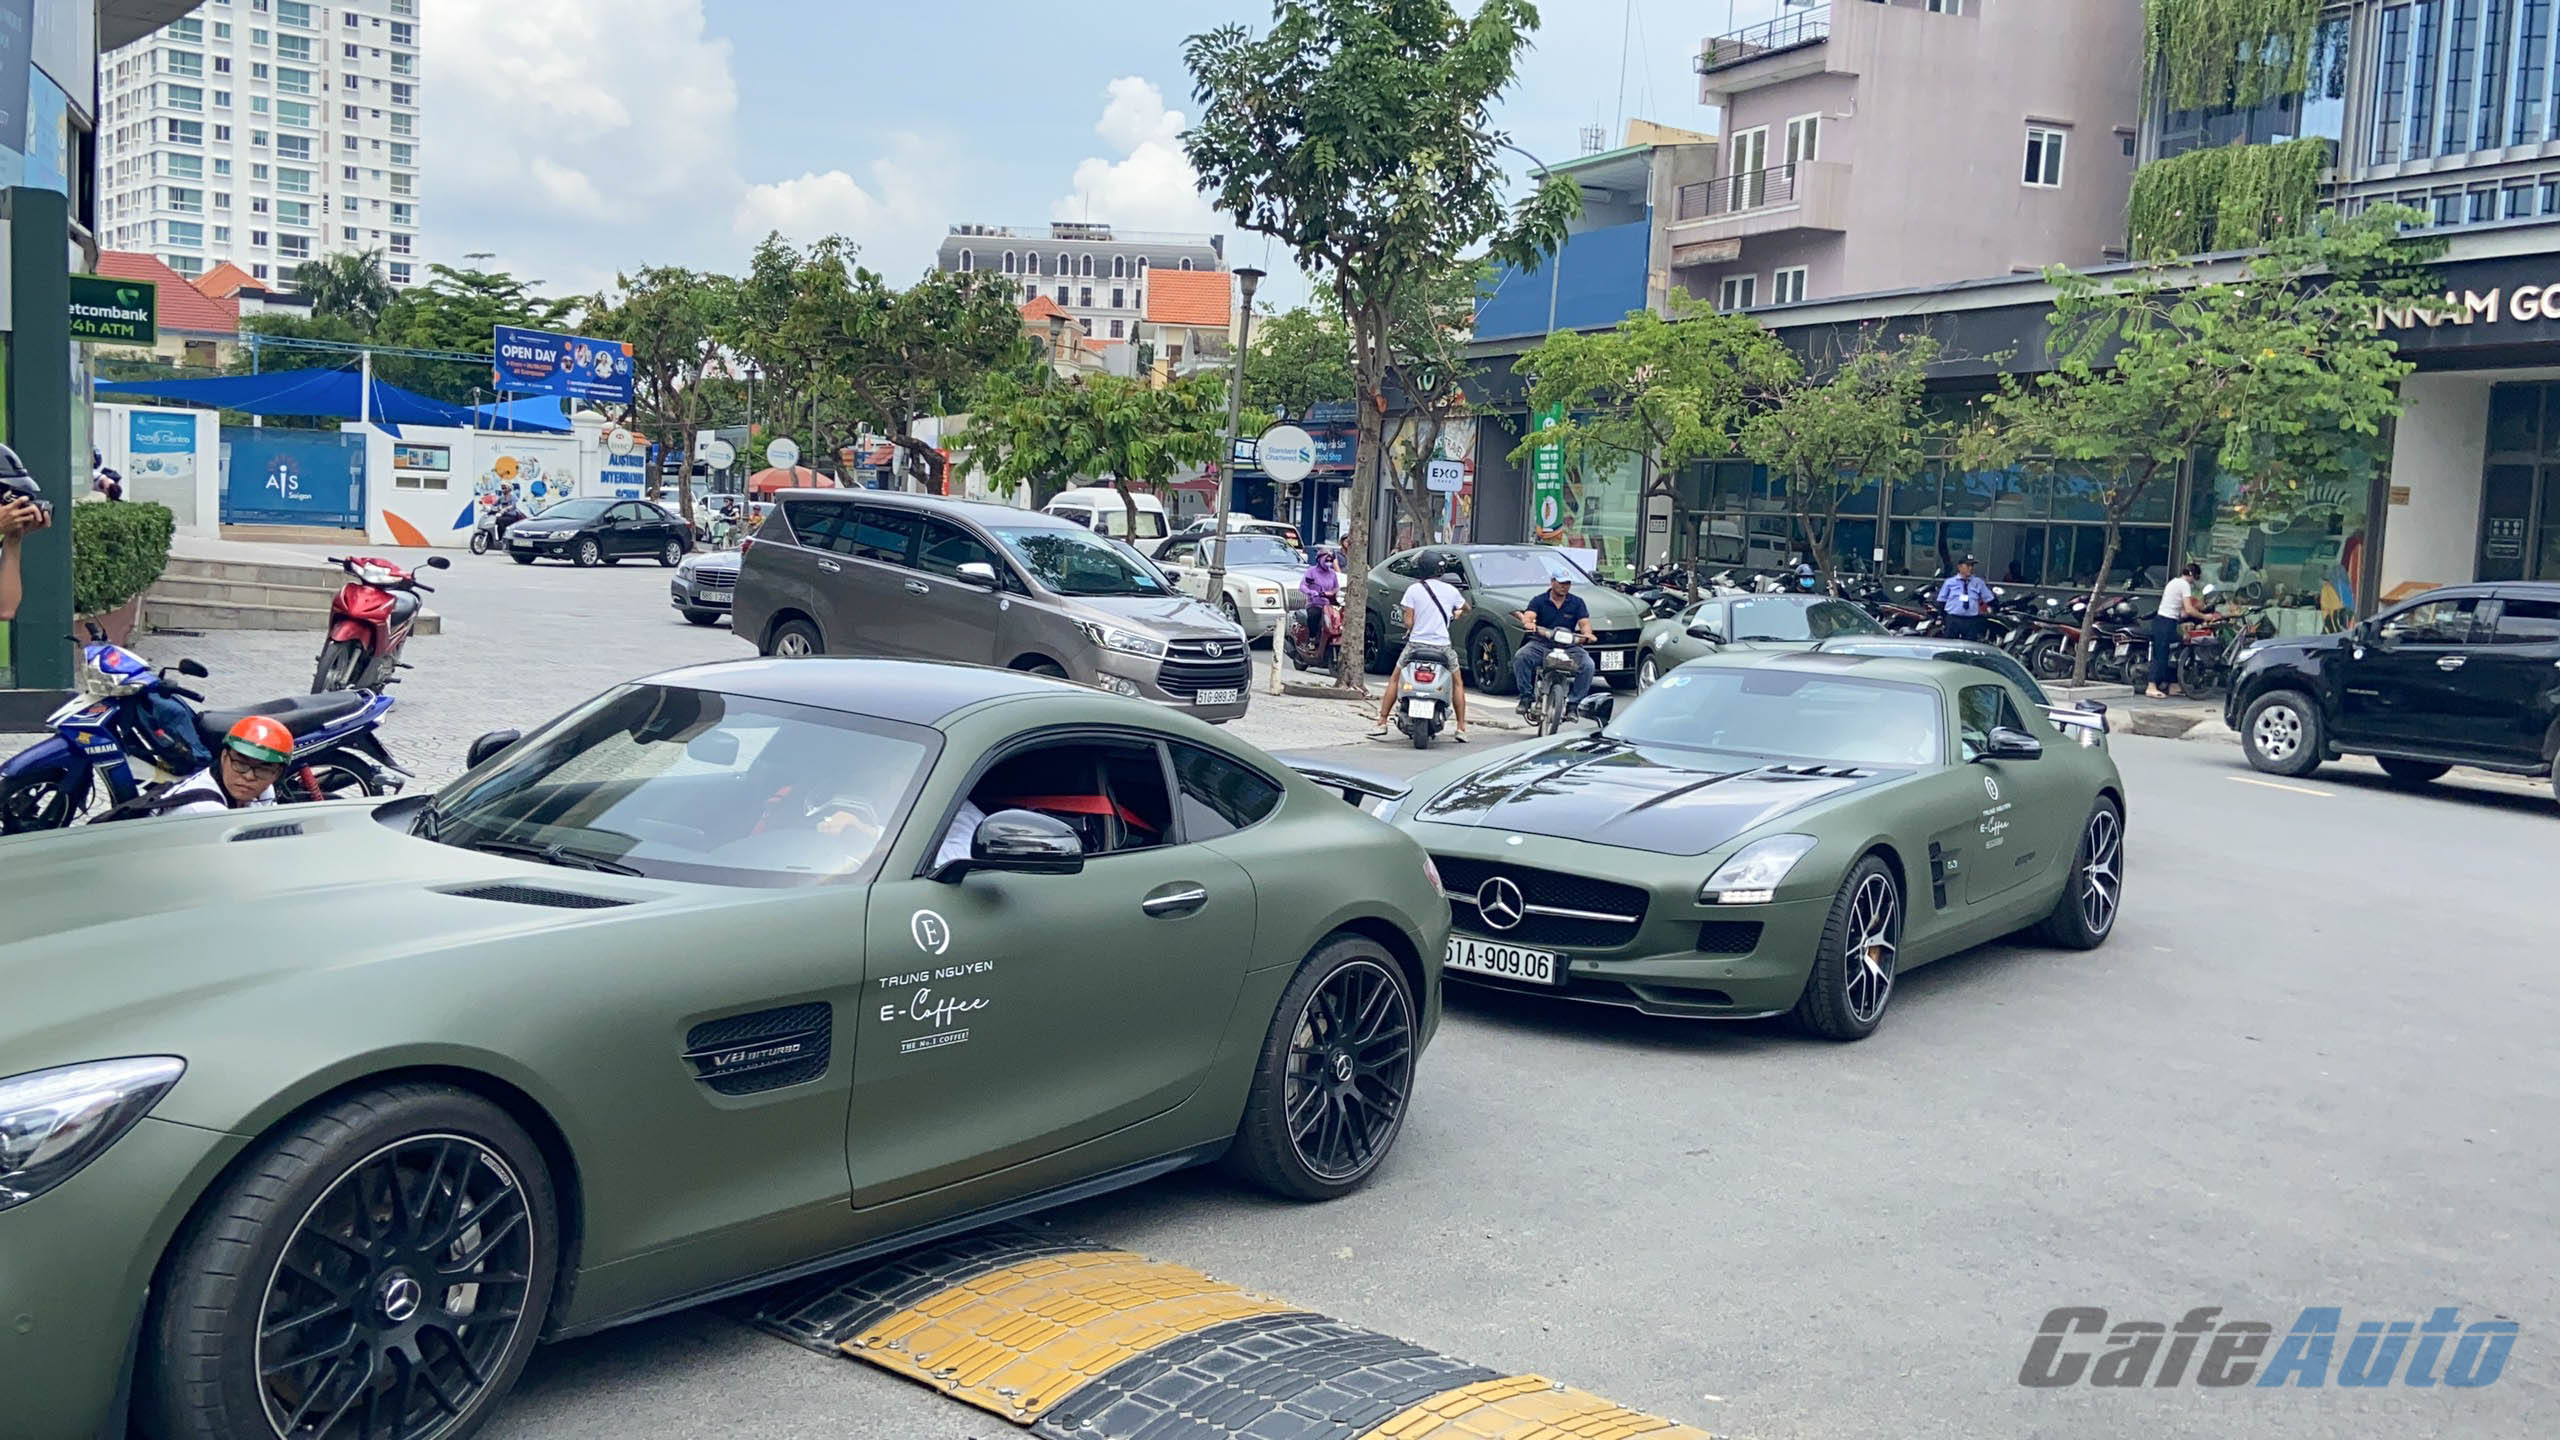 Sài Gòn: Dàn siêu xe trăm tỷ của ông chủ Trung Nguyên diễu hành trên phố